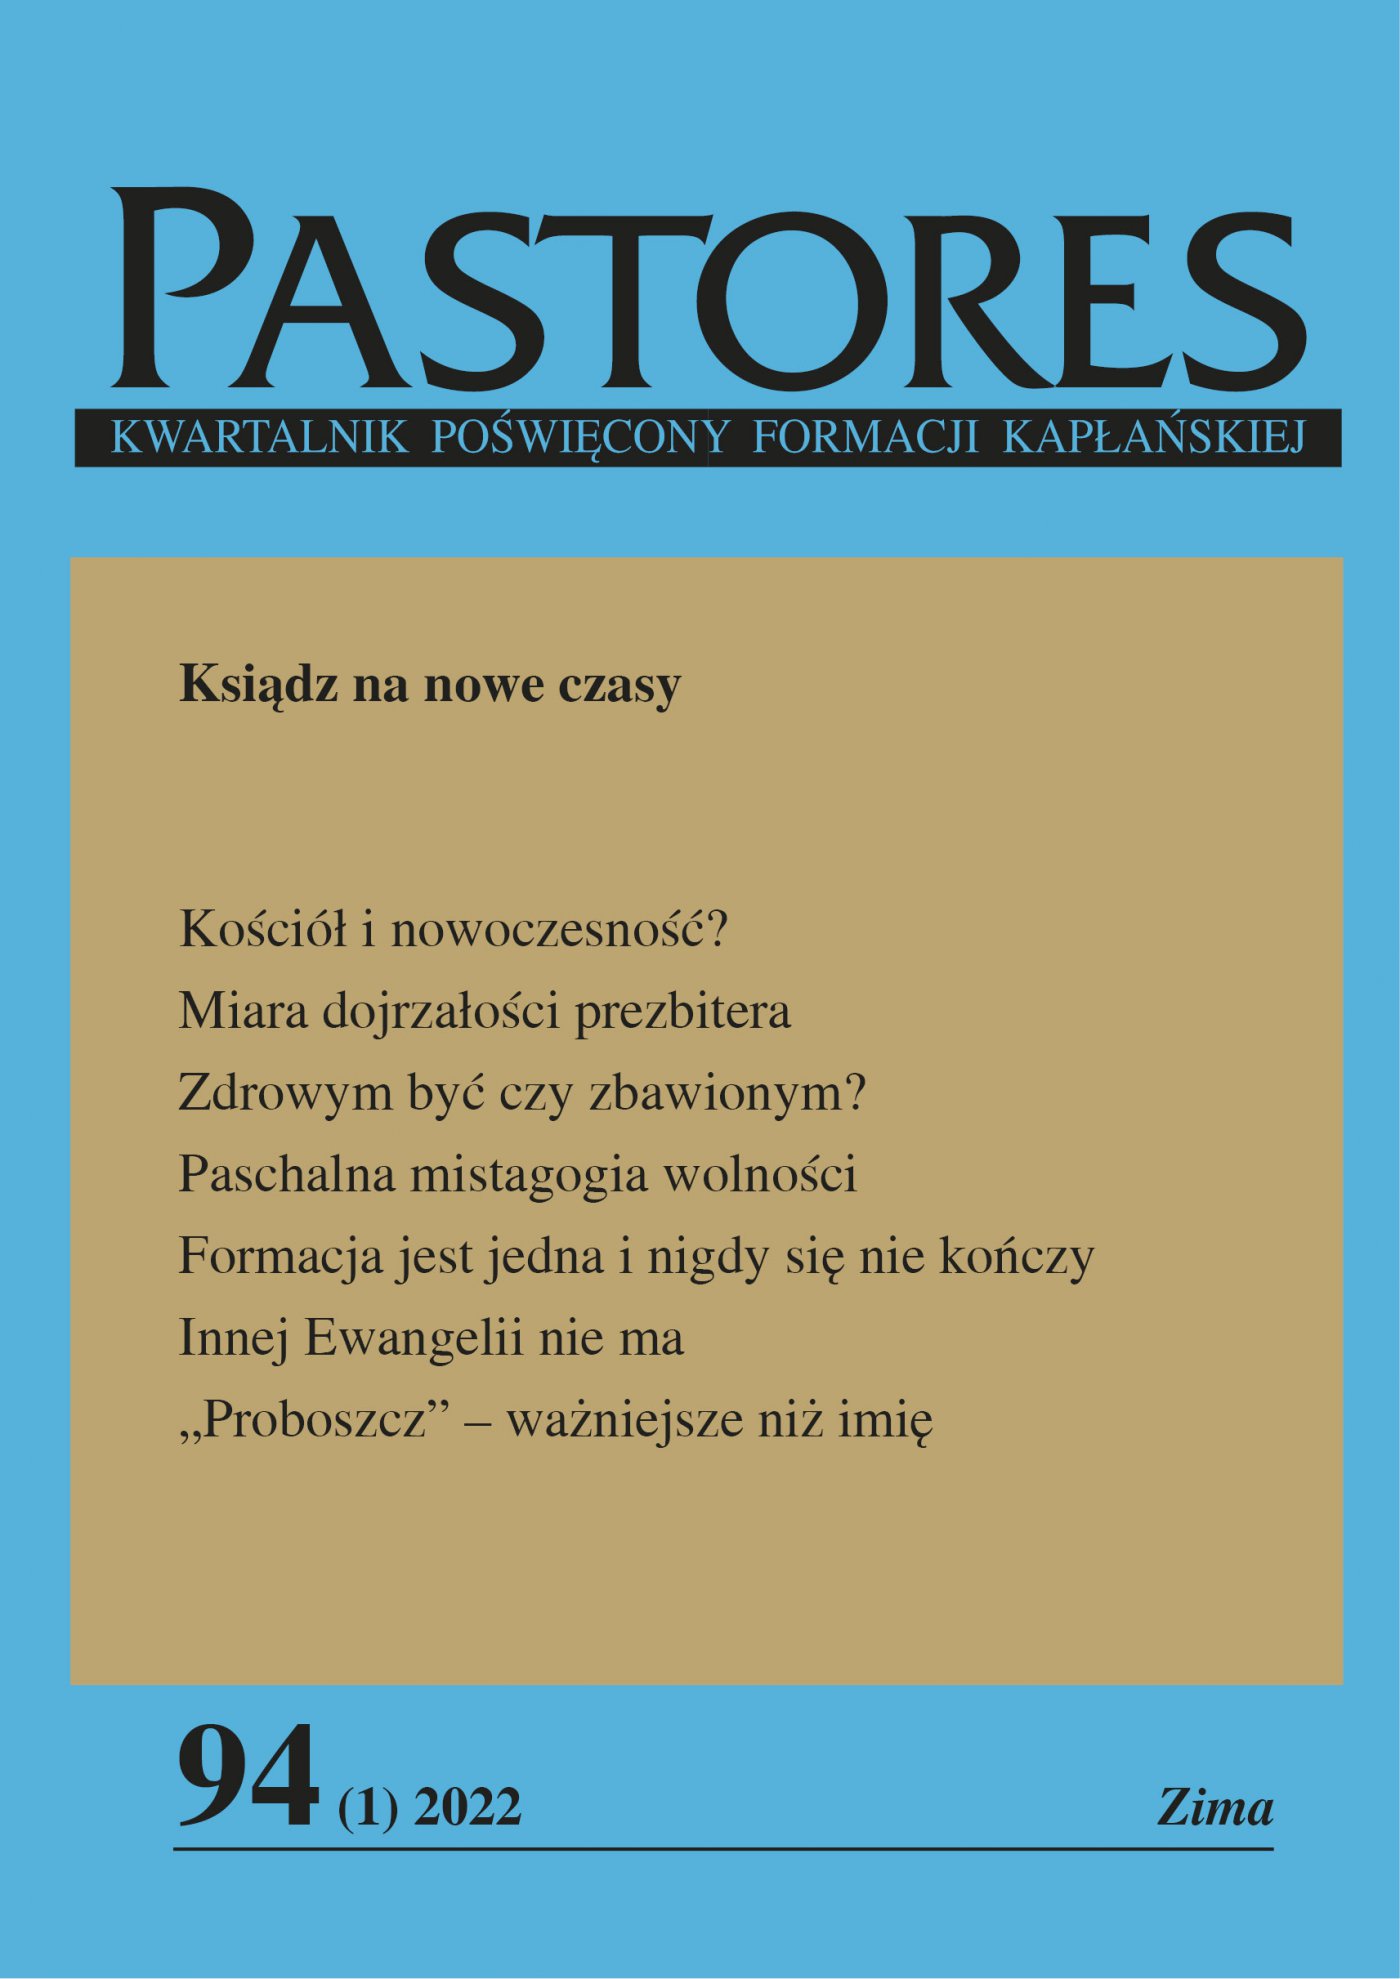 Pastores 94 (1) 2022 - Ebook (Książka EPUB) do pobrania w formacie EPUB